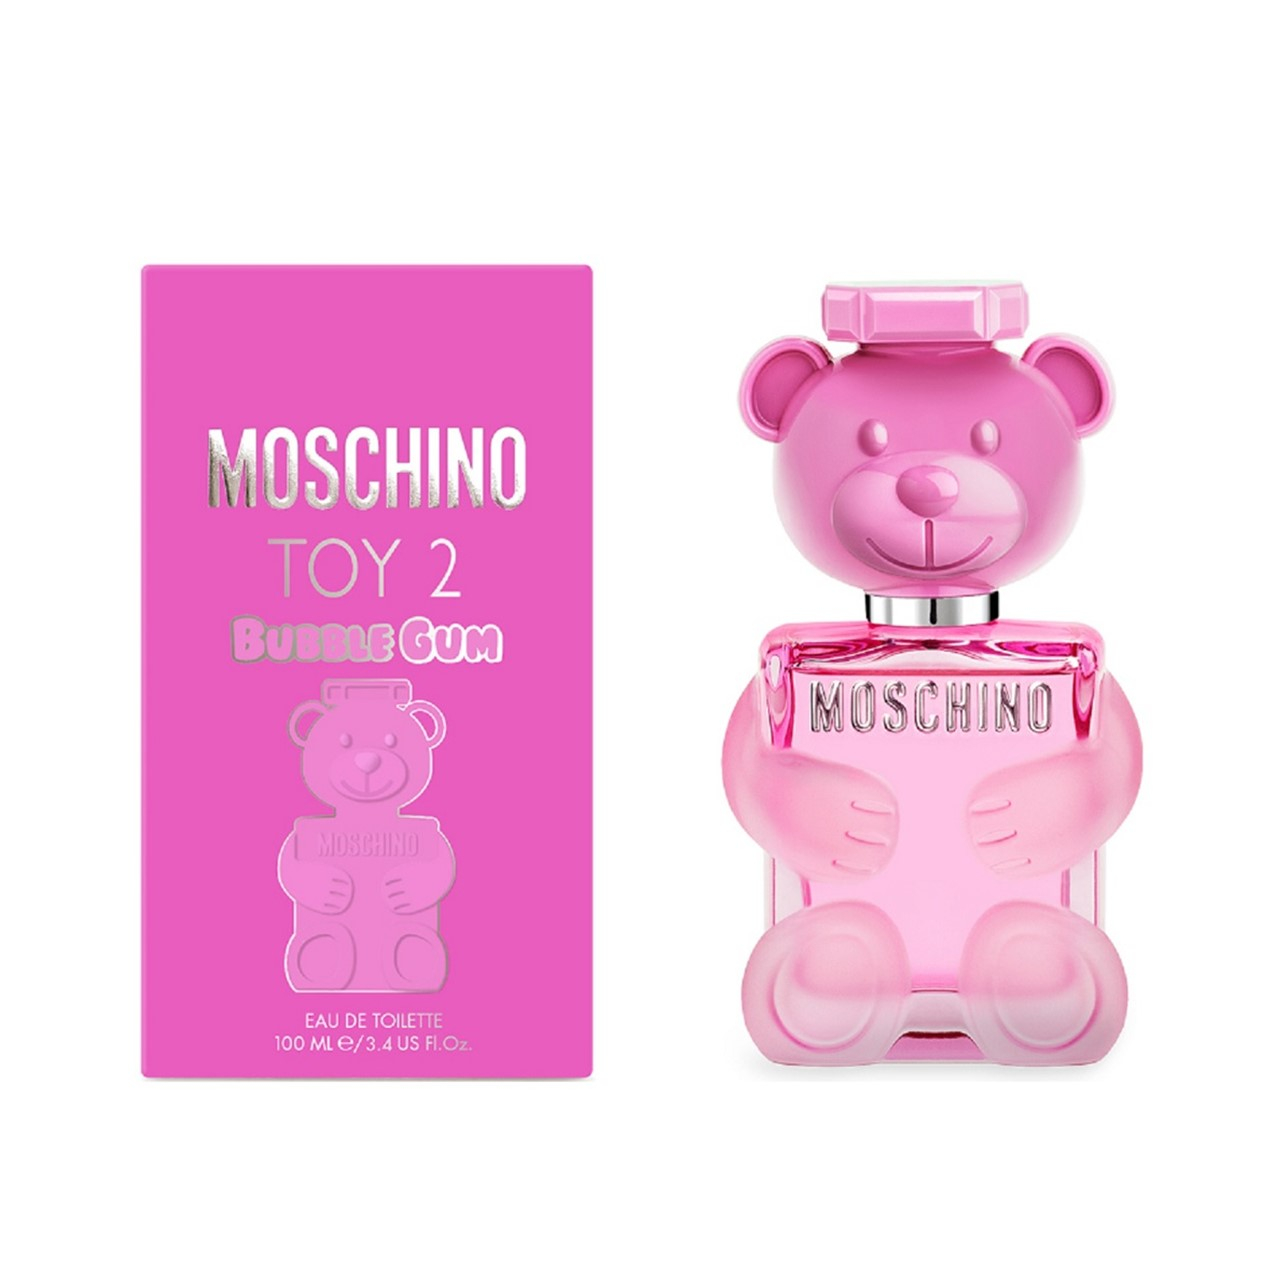 Moschino Toy 2 Bubble Gum Eau de Toilette 100ml (3.4fl oz)